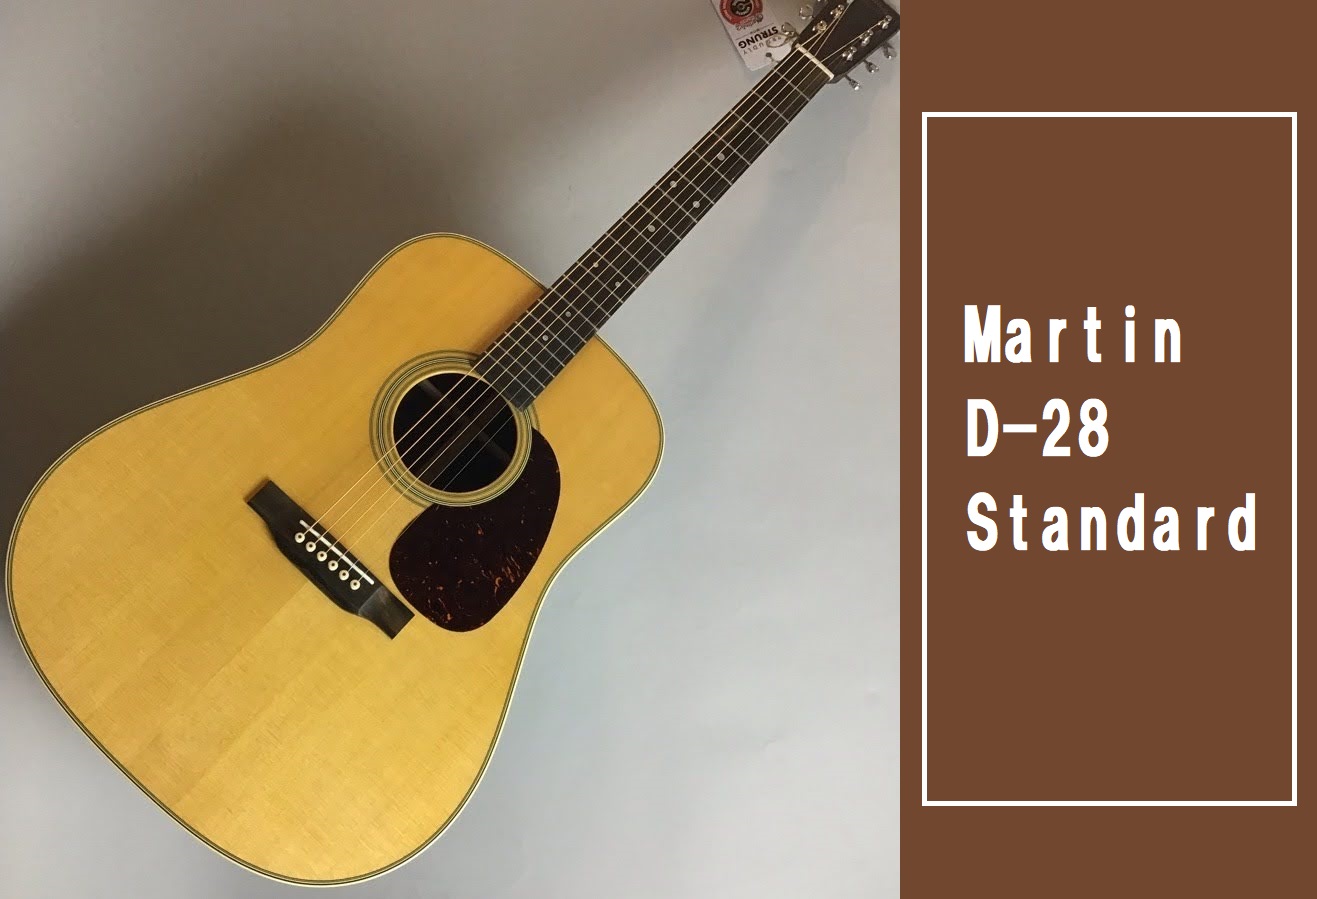 *人気モデルの『D-28 Standard』が大分店に！ 「Martin」を語る上では絶対に外すことのできないモデル「D-28」人気モデルの最新仕様モデルが入荷しました！]]アコースティックギターの永遠のスタンダードであり、多くの伝説を生み出してきたモデル。伸びのある高音成分と、太く広がりのある低音 […]